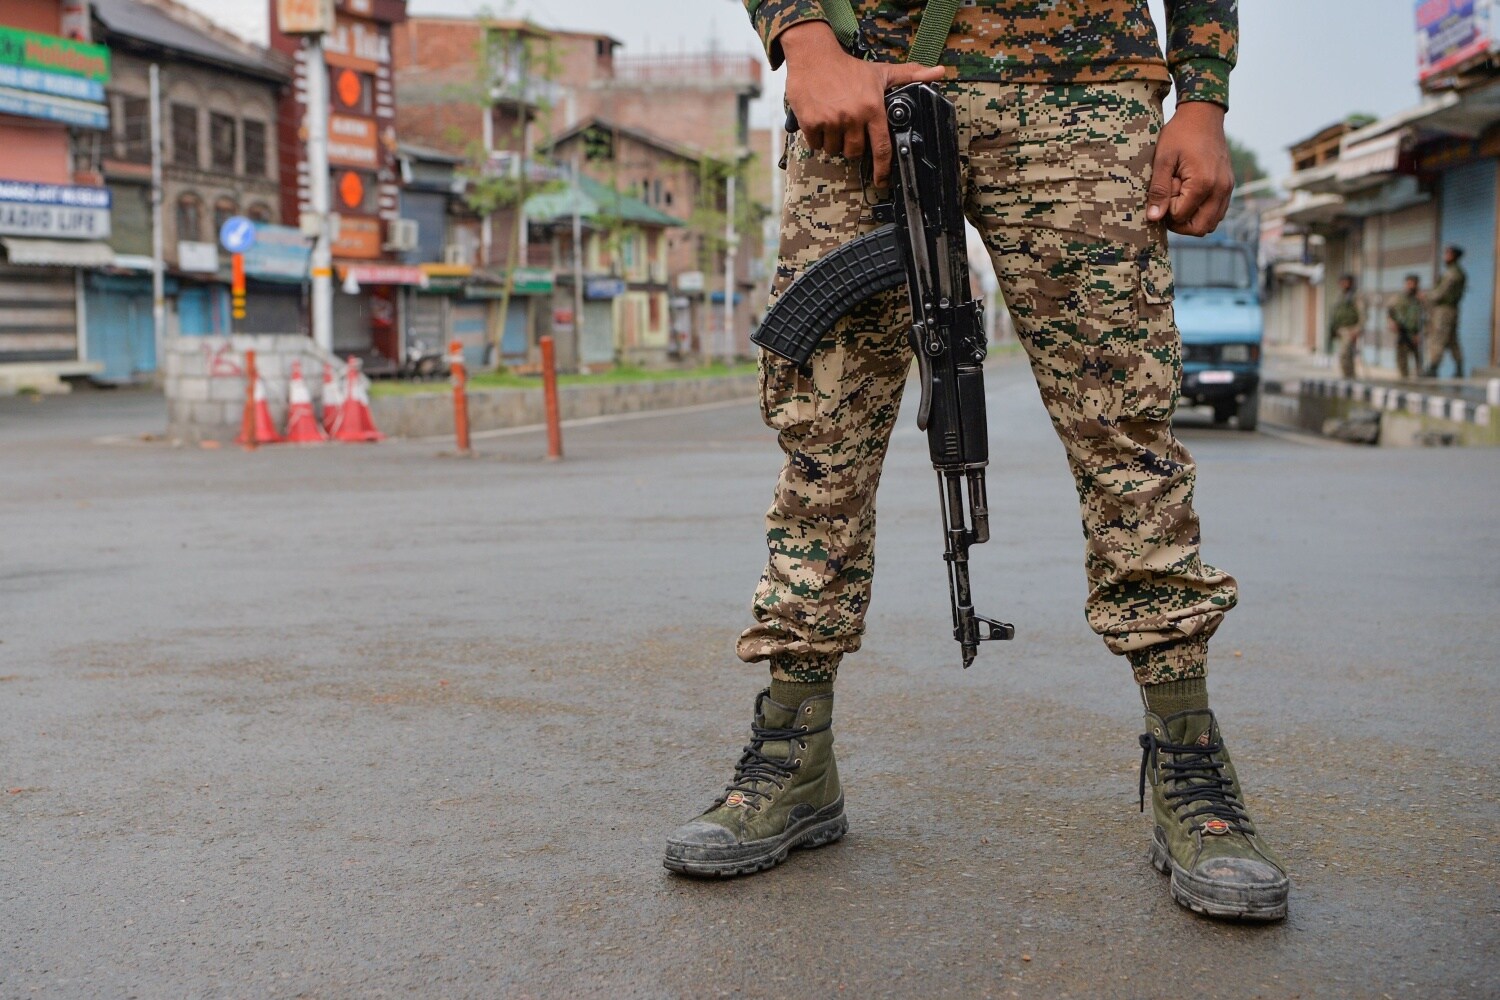 Militar de guardia en una calle del centro de Srinagar, ya que las restricciones generalizadas a los movimientos y el apagón de las telecomunicaciones se mantuvieron después de que el gobierno indio despojó a Jammu y Cachemira de su autonomía